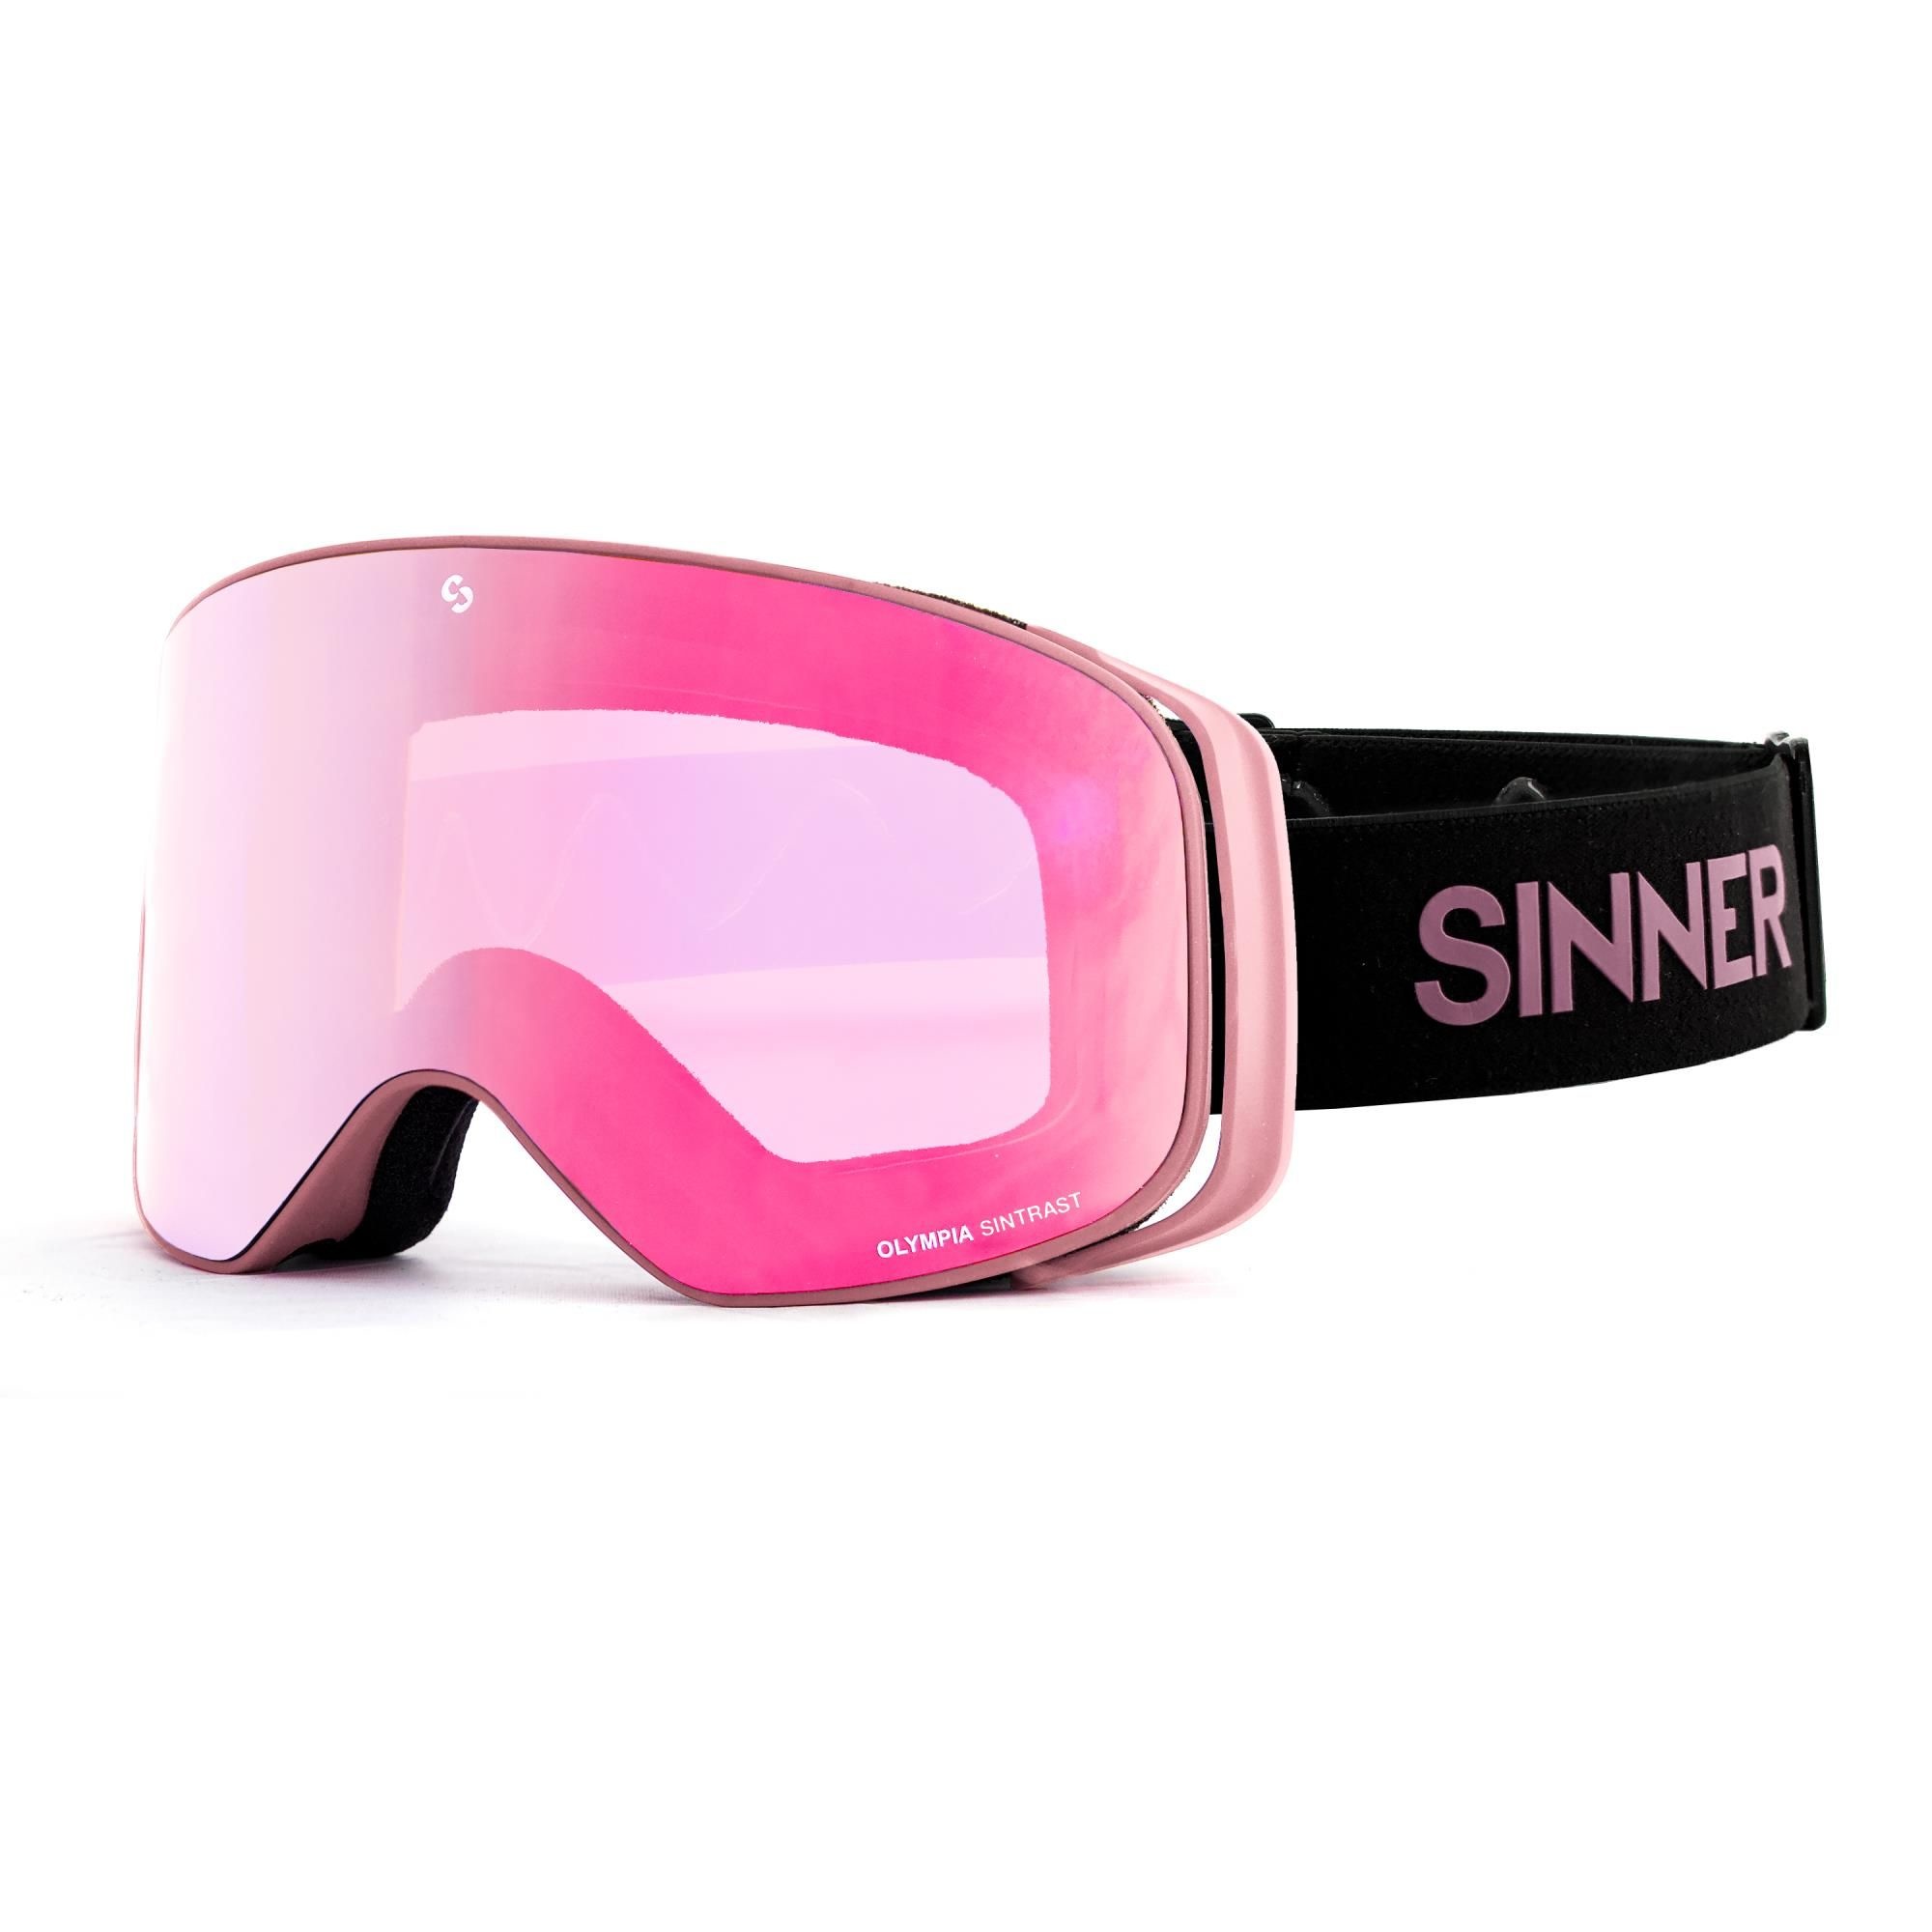 SINNER OLYMPIA skibril | Skifabriek.nl - Skifabriek.nl